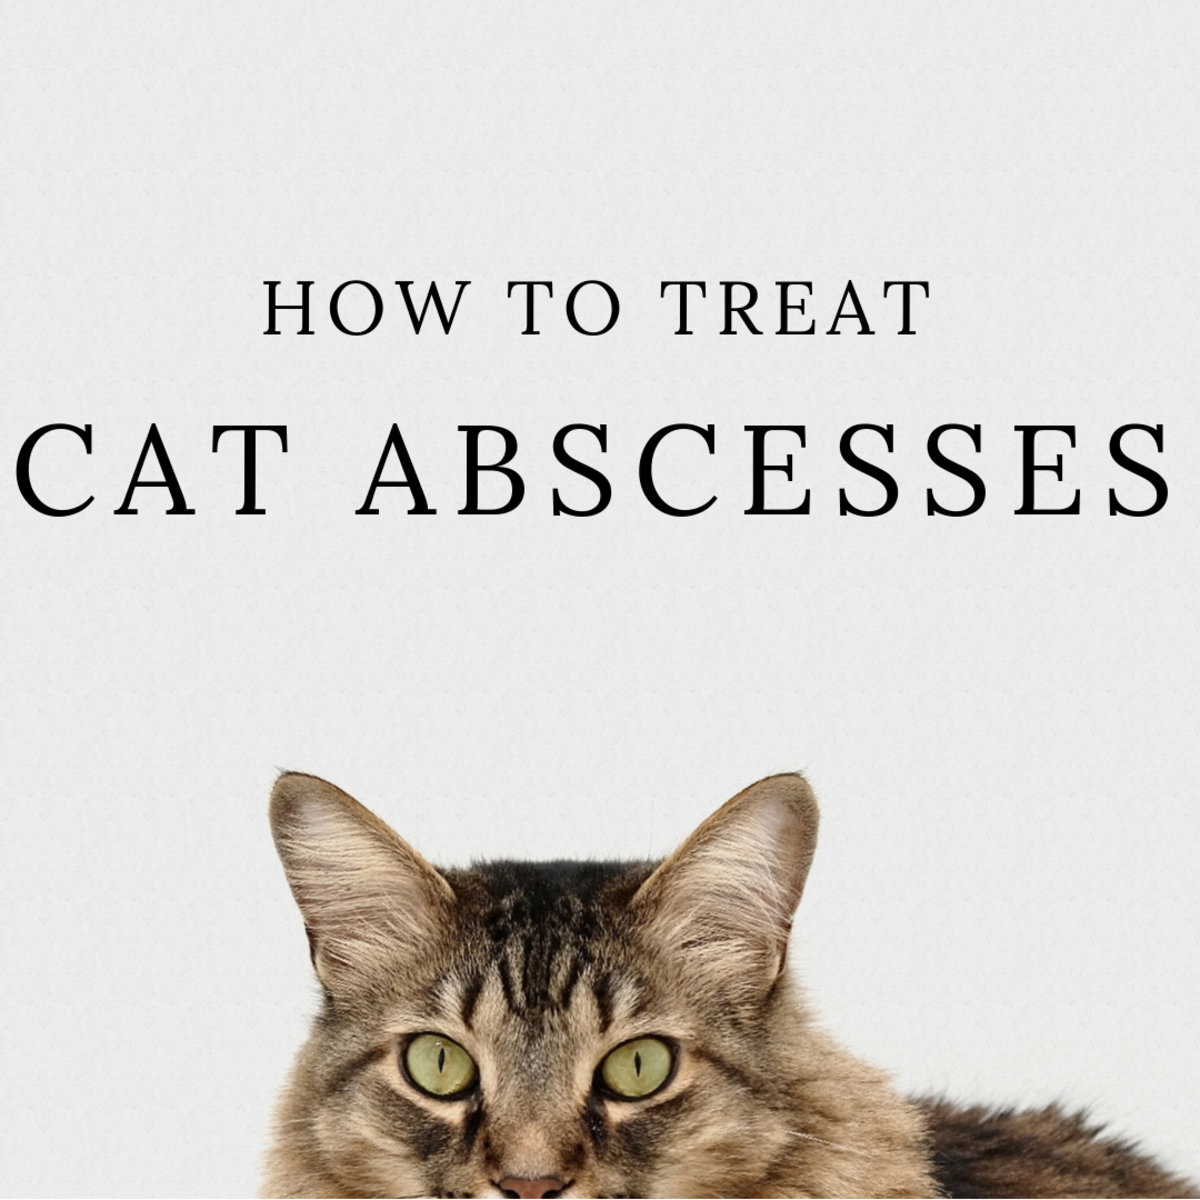 Cat Abscess Home Treatment